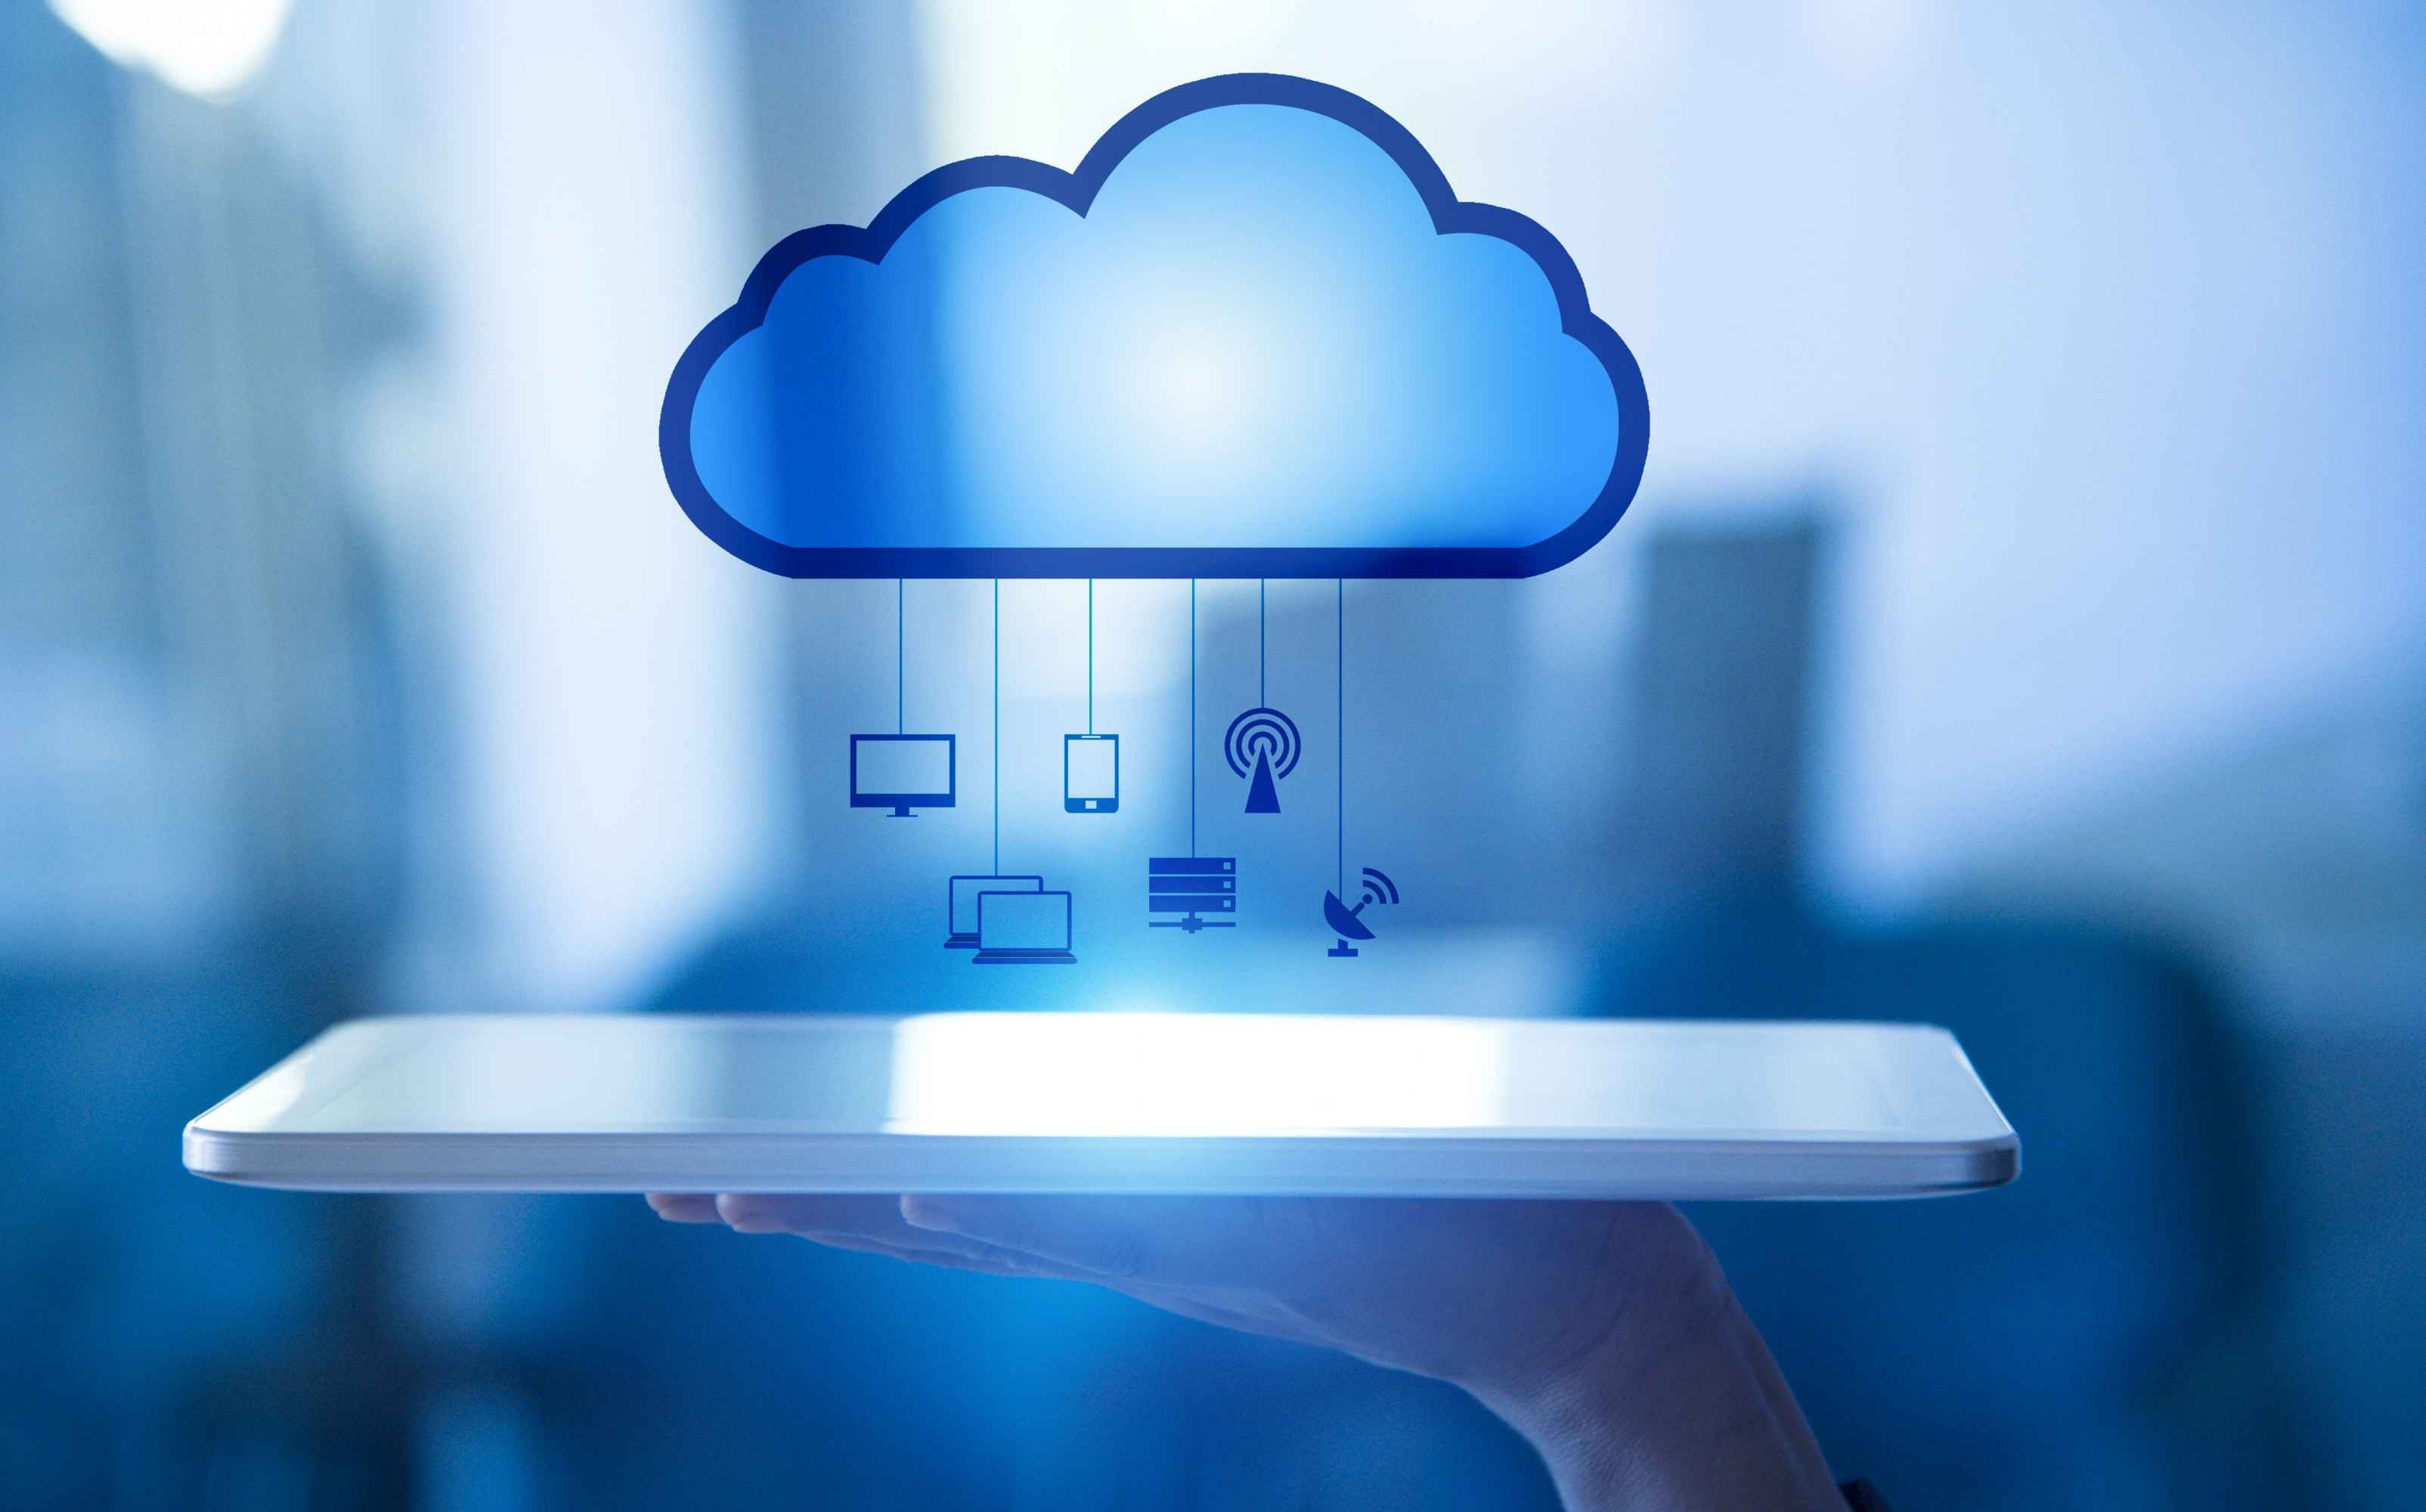 Gestão de arquivos e usuários em nuvem é vital para as empresas